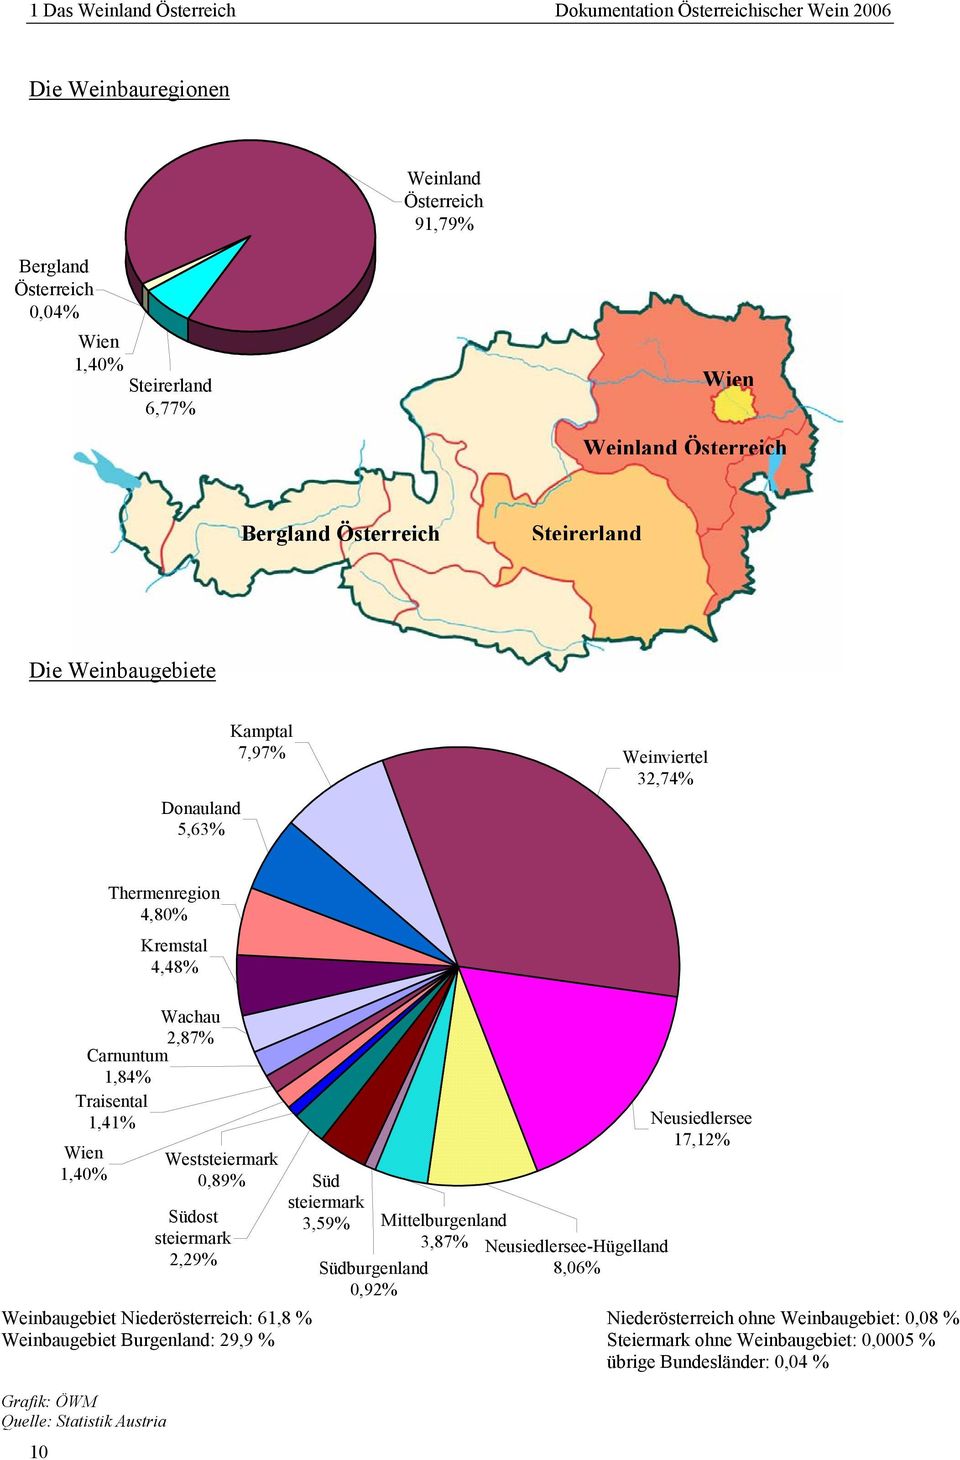 Traisental 1,41% Weststeiermark 0,89% Südost steiermark 2,29% Süd steiermark 3,59% Südburgenland 0,92% Mittelburgenland 3,87% NeusiedlerseeHügelland 8,06% Neusiedlersee 17,12% Weinbaugebiet